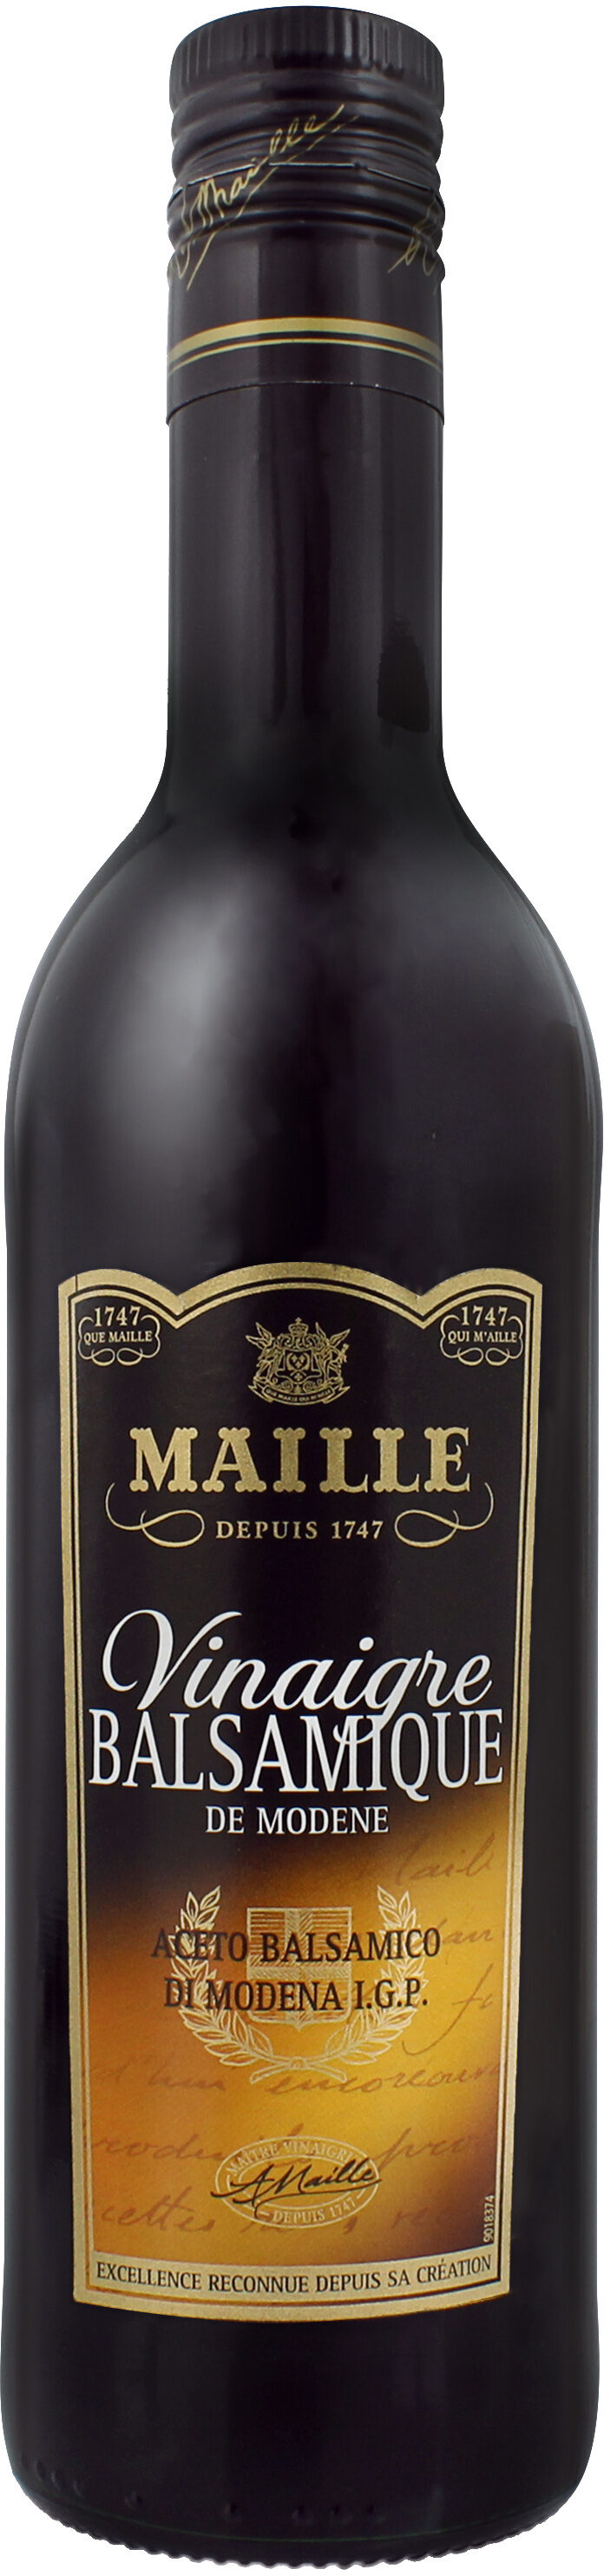 Maille Vinaigre Balsamique de Modène 50cl - Producto - fr